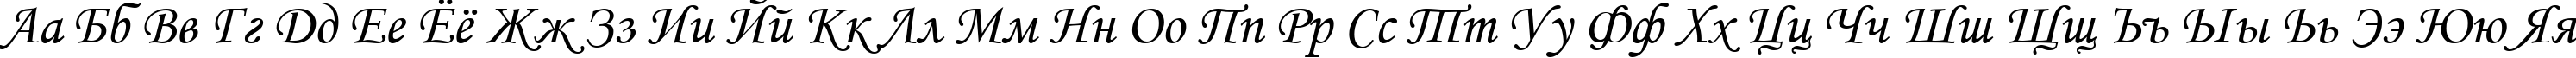 Пример написания русского алфавита шрифтом font353